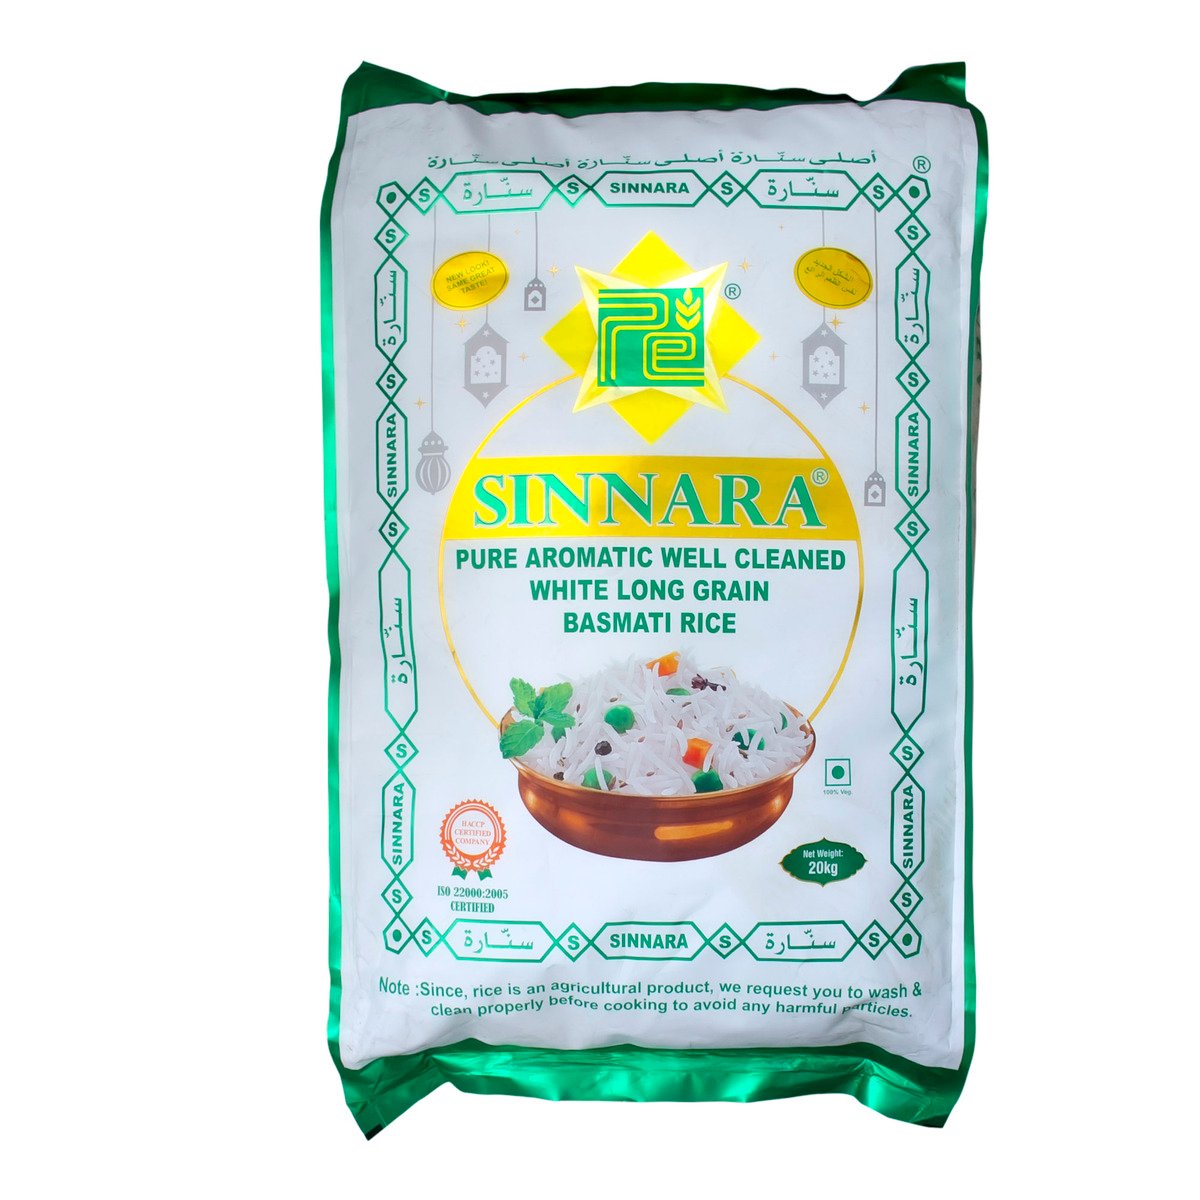 Sinnara White Long Grain Basmati Rice 20 kg